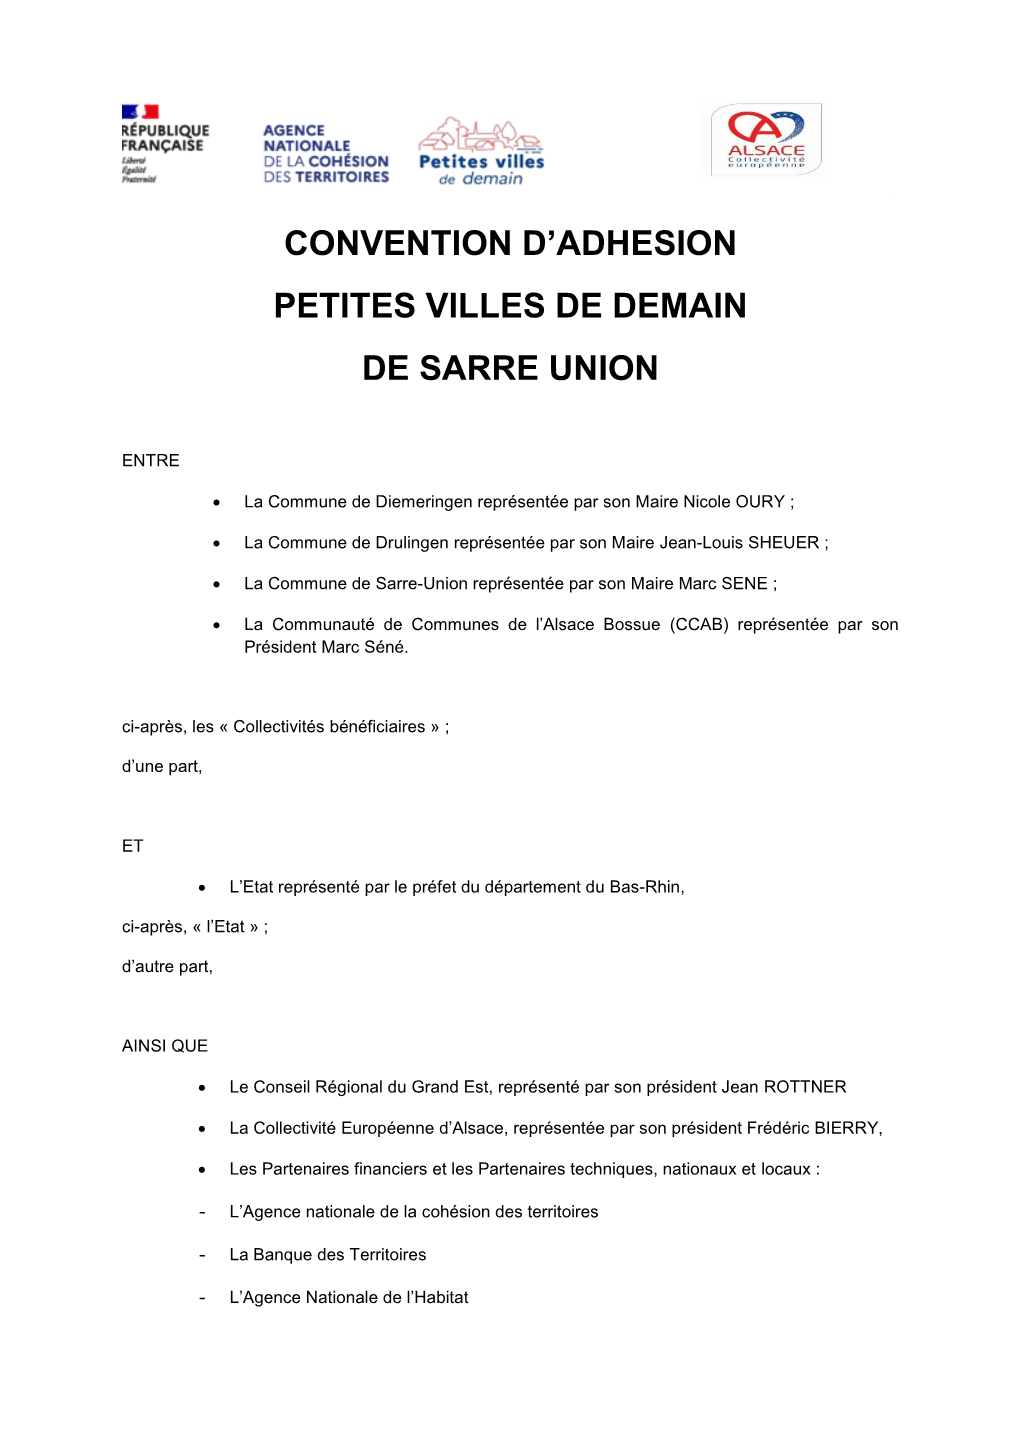 Convention D'adhesion Petites Villes De Demain De